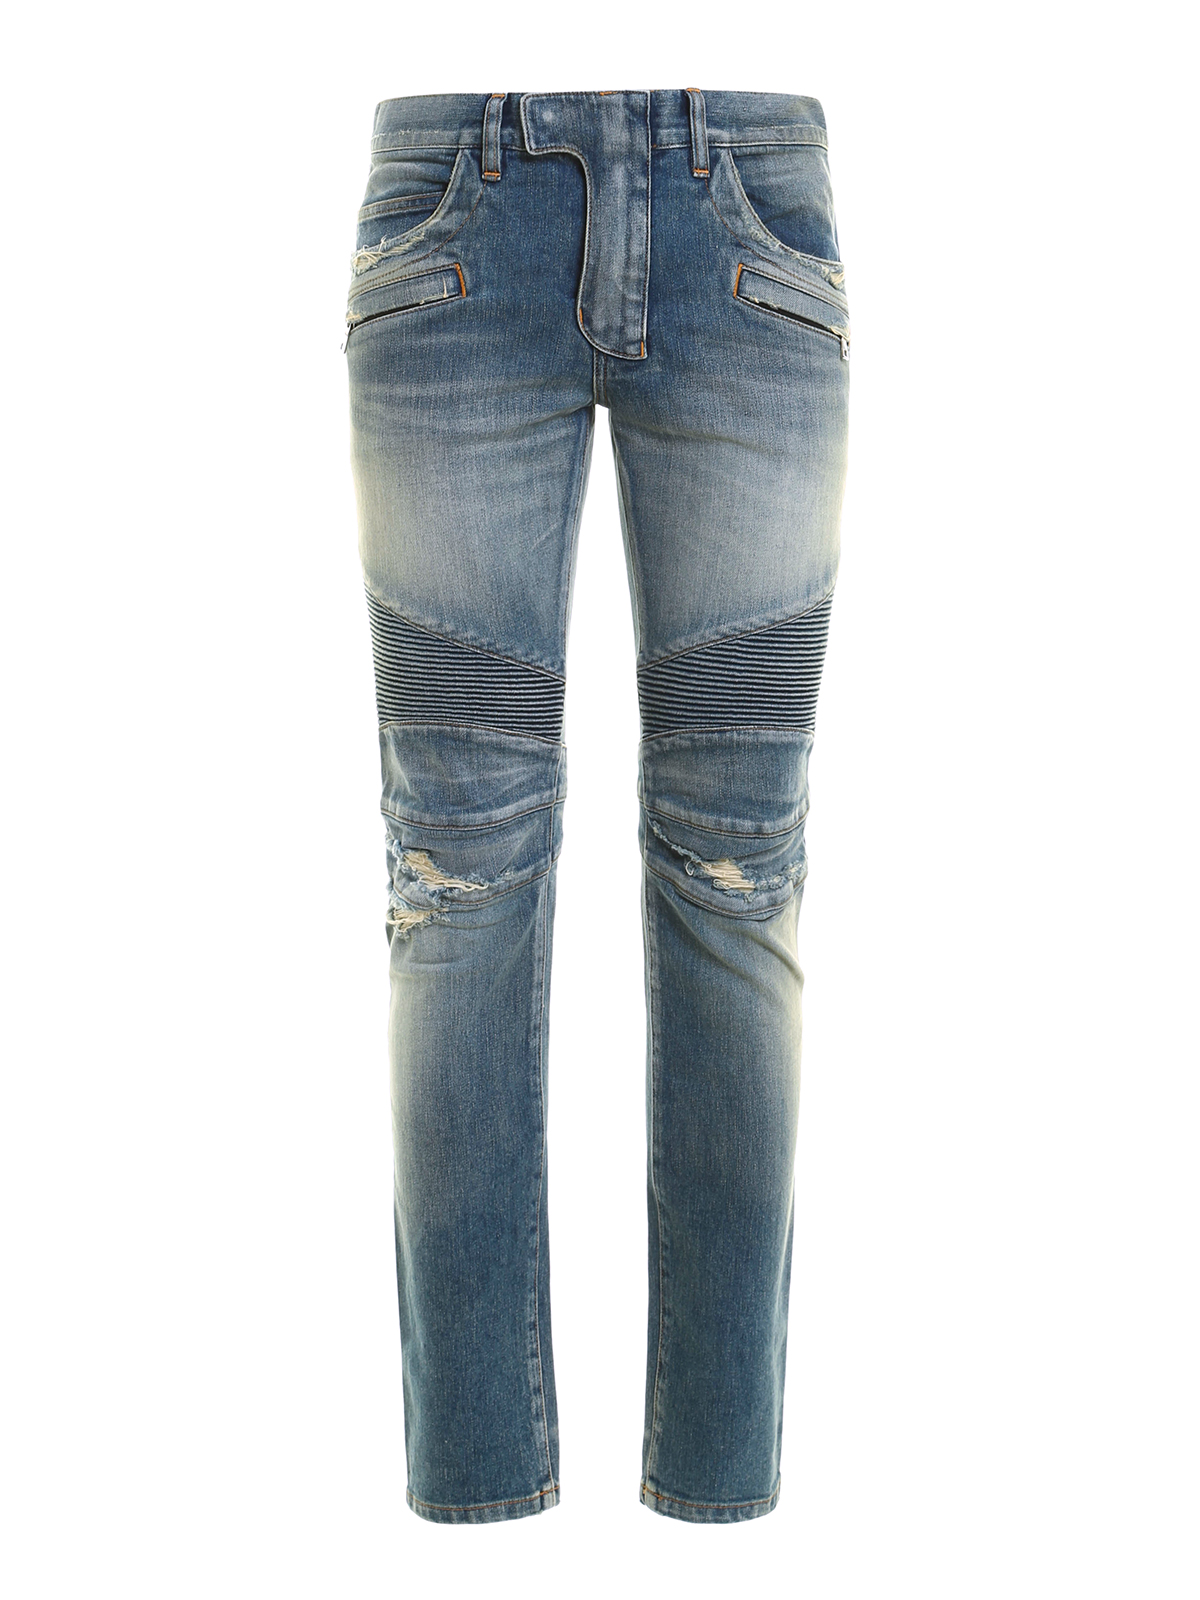 Straight leg jeans Balmain - Biker-style ripped jeans - POHT551C710V155